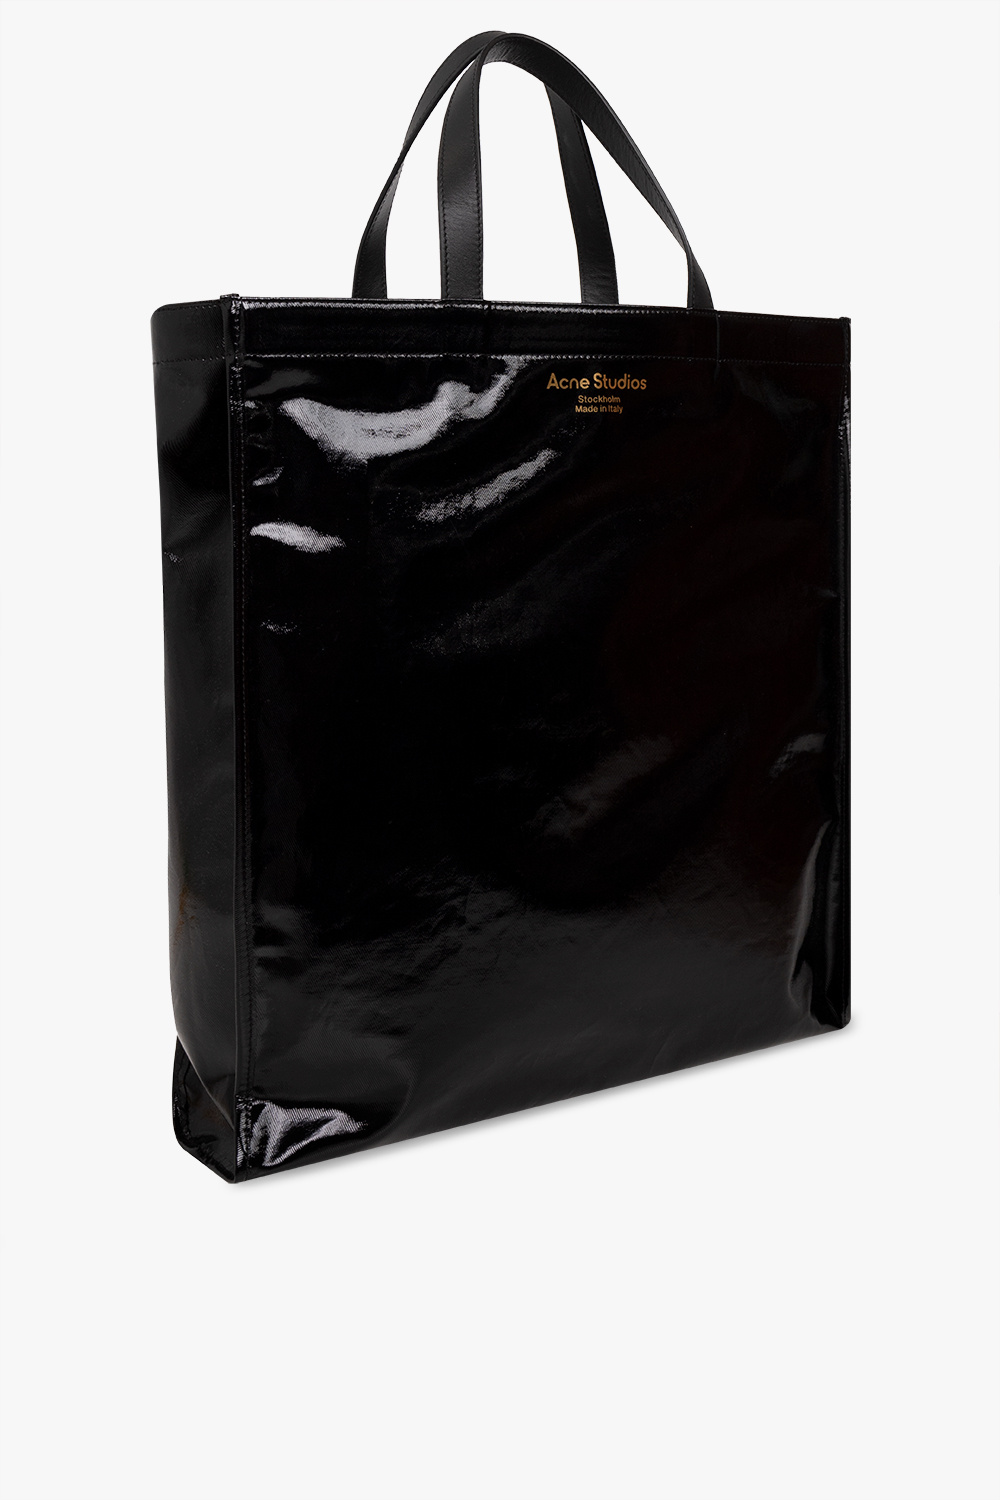 Acne Studios Shiny shopper bag